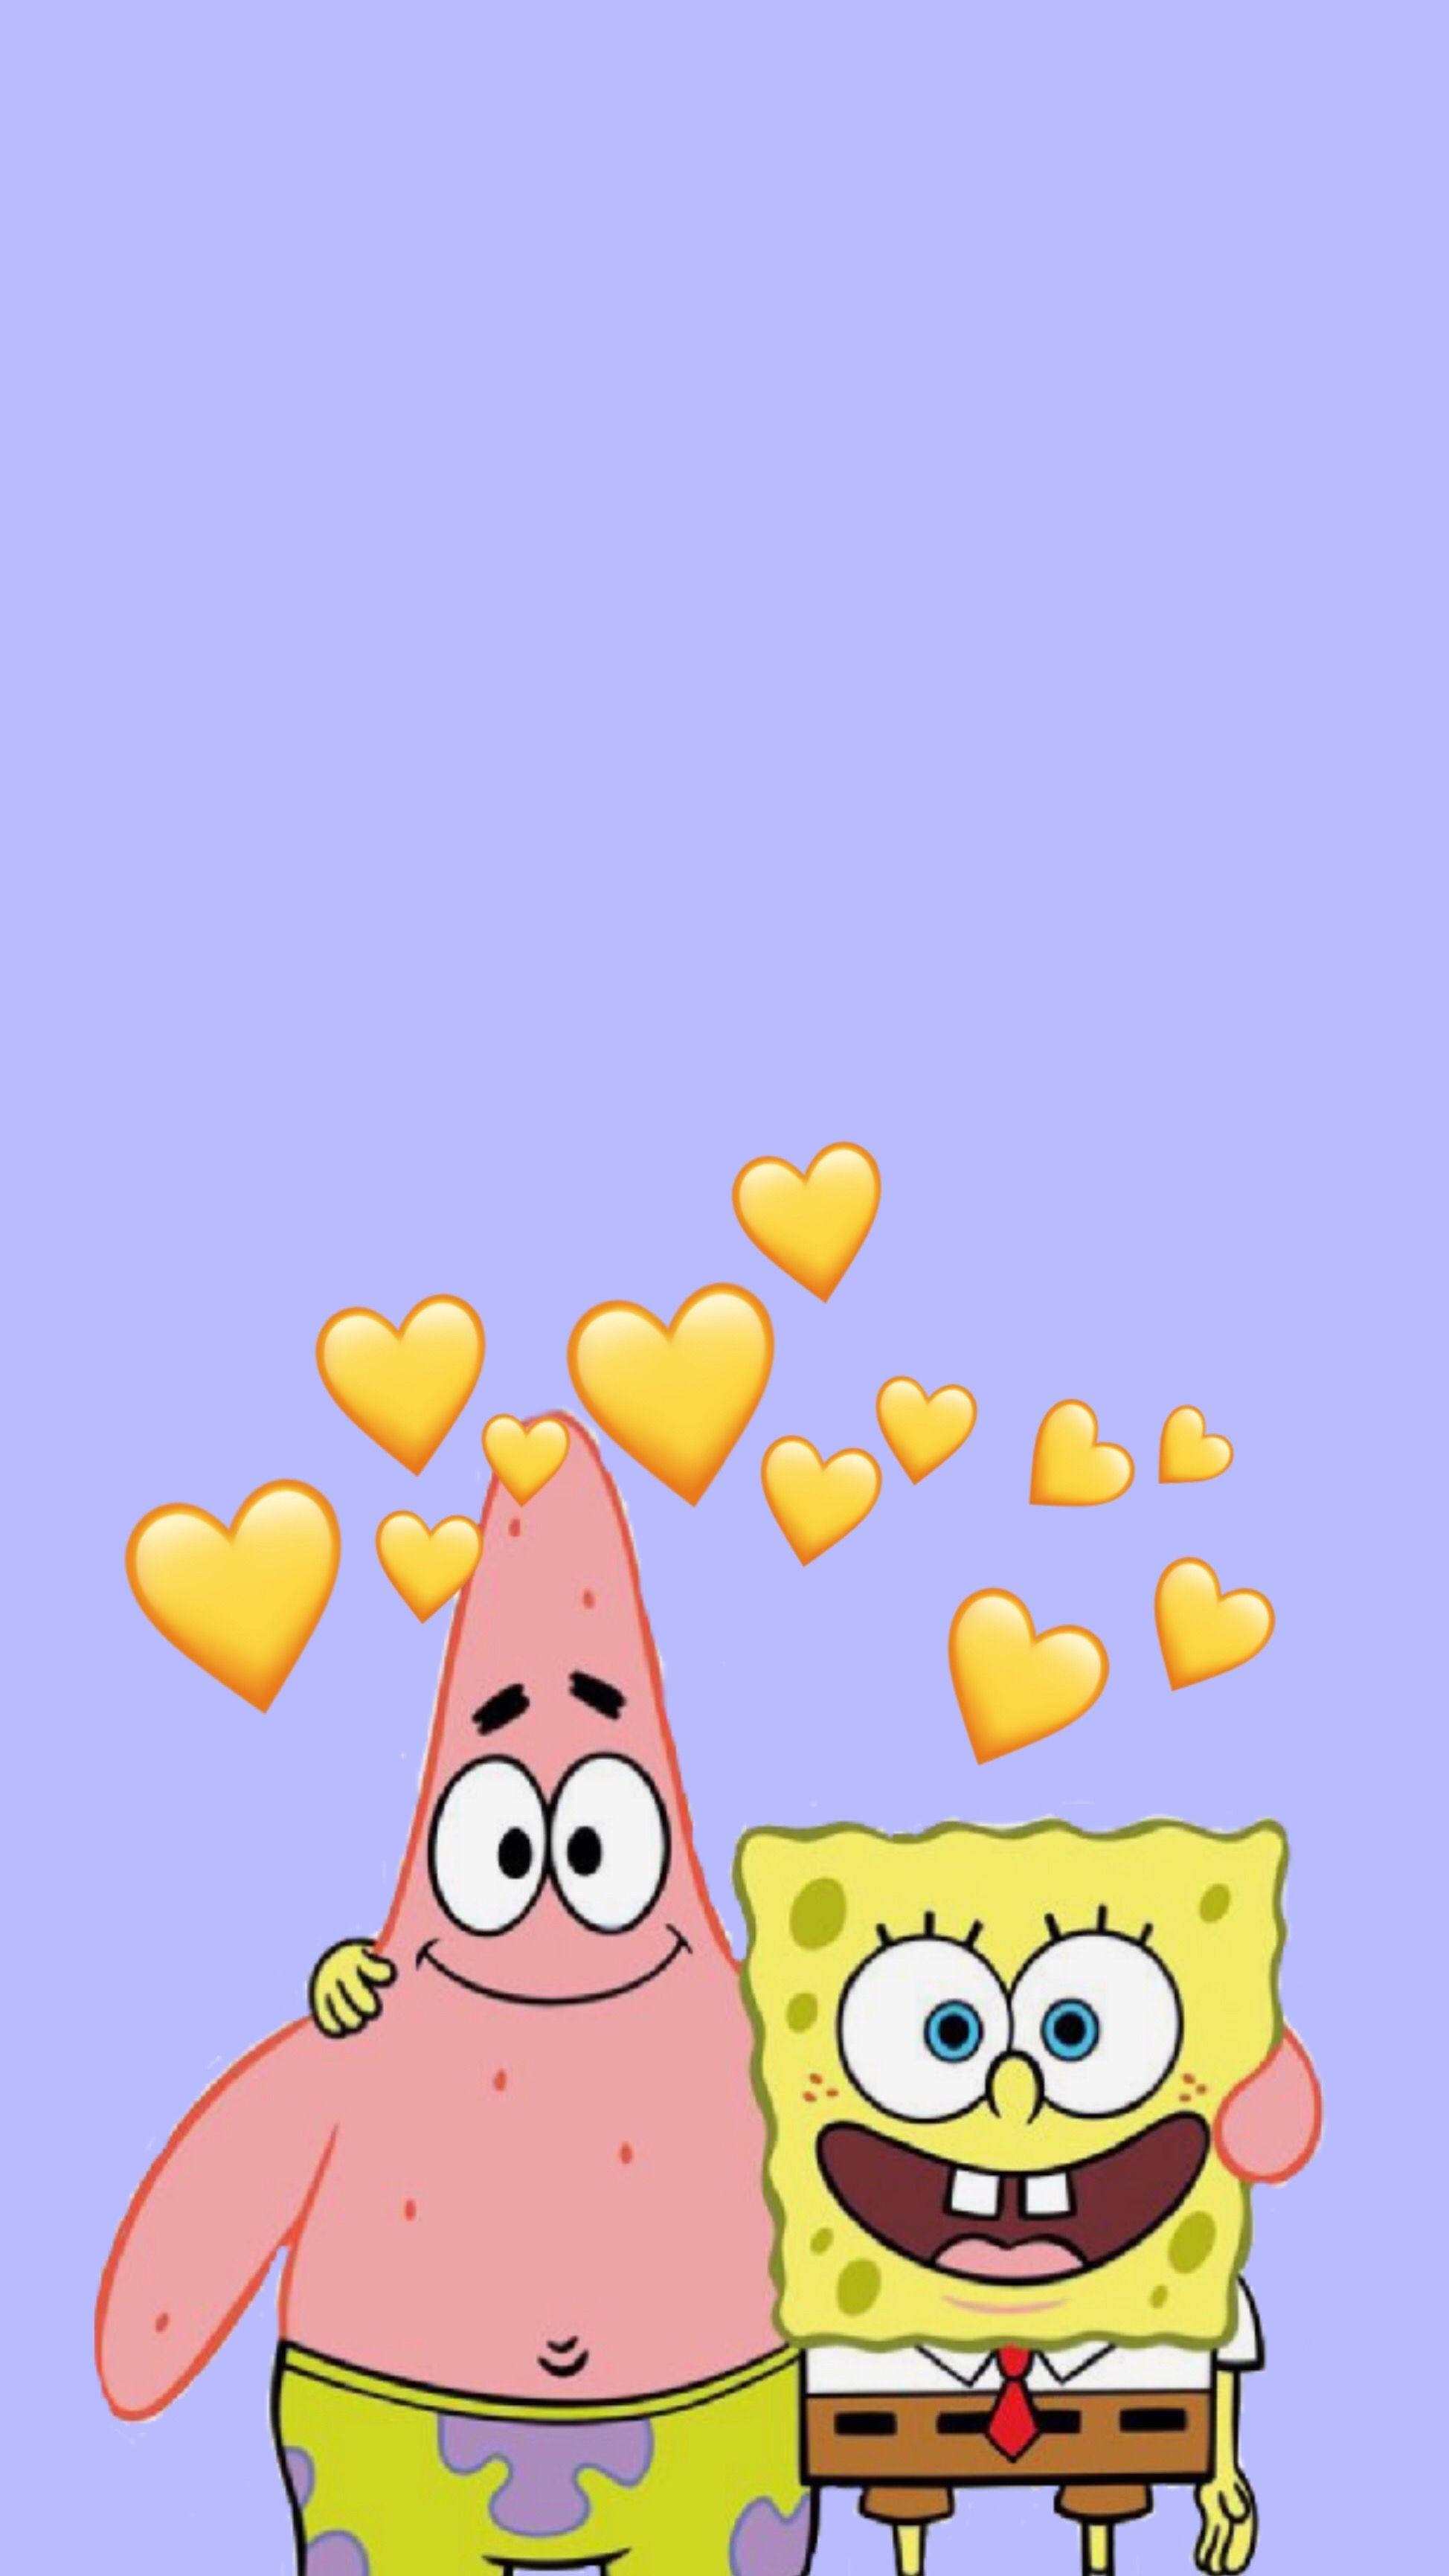 Aesthetic Wallpaper Spongebob And Patrick